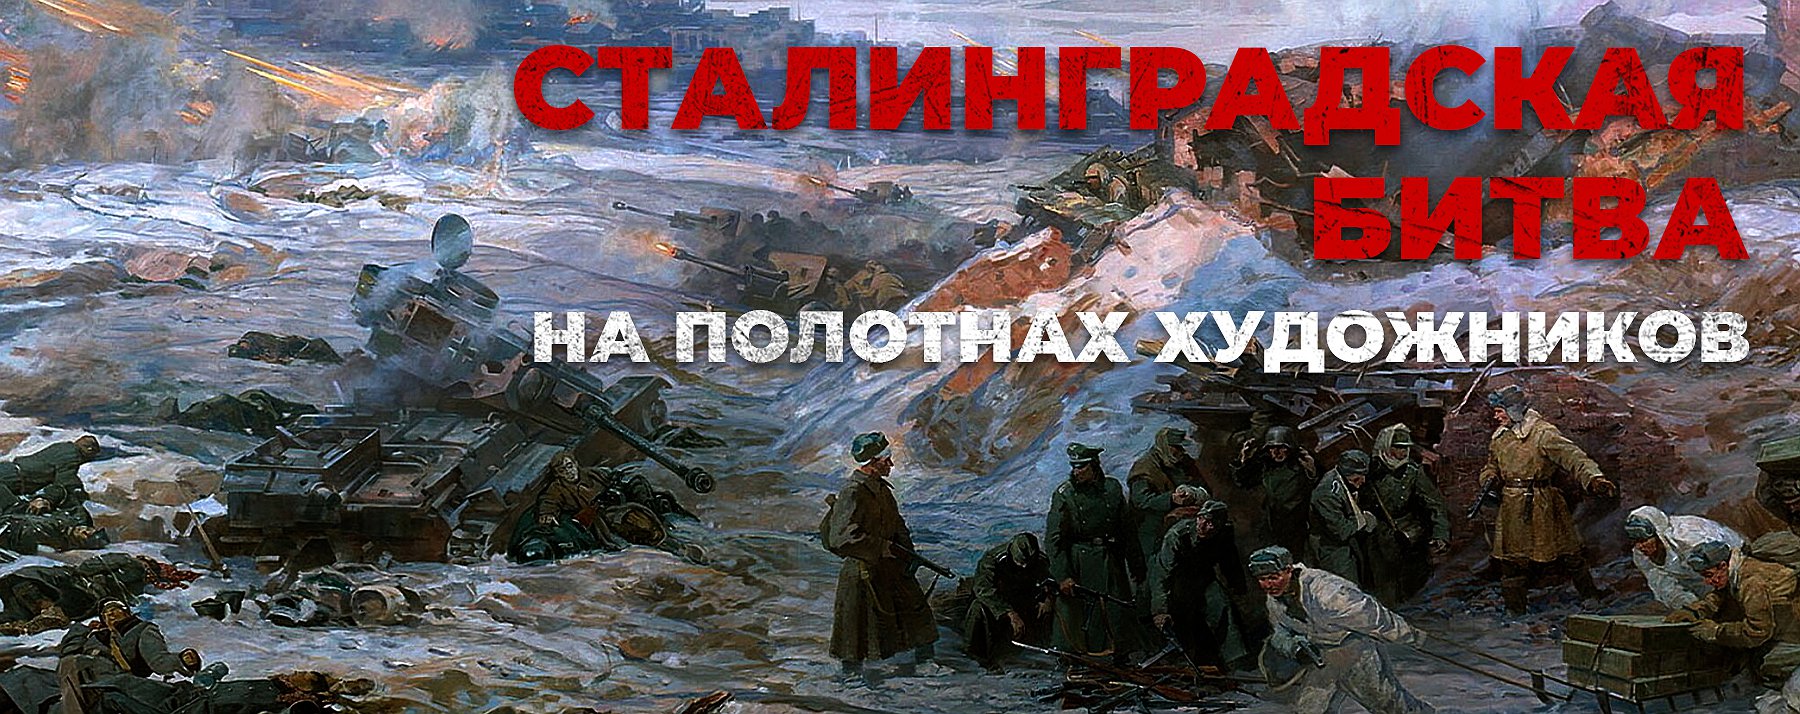 Сталинград 200 дней мужества и стойкости рисунок